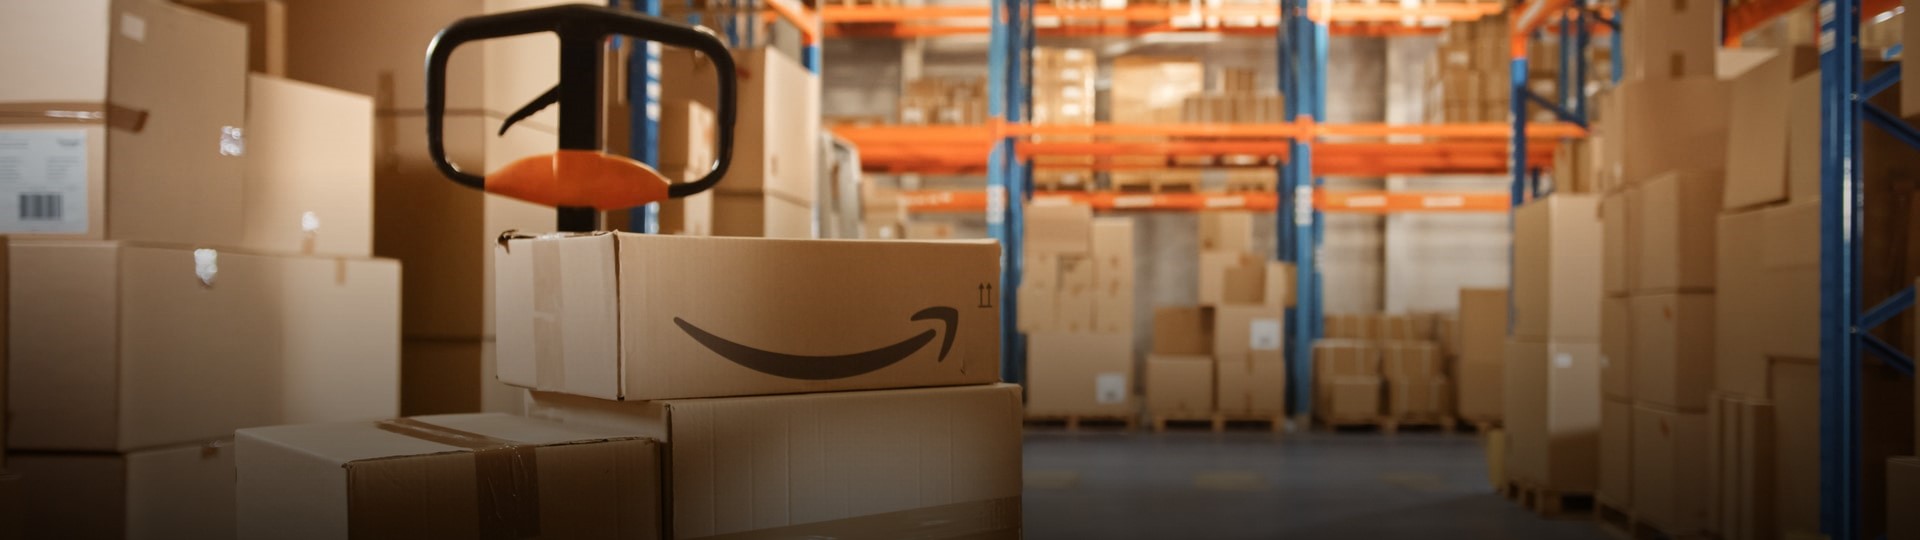 Zaměstnanci Amazonu koketují se vznikem odborů